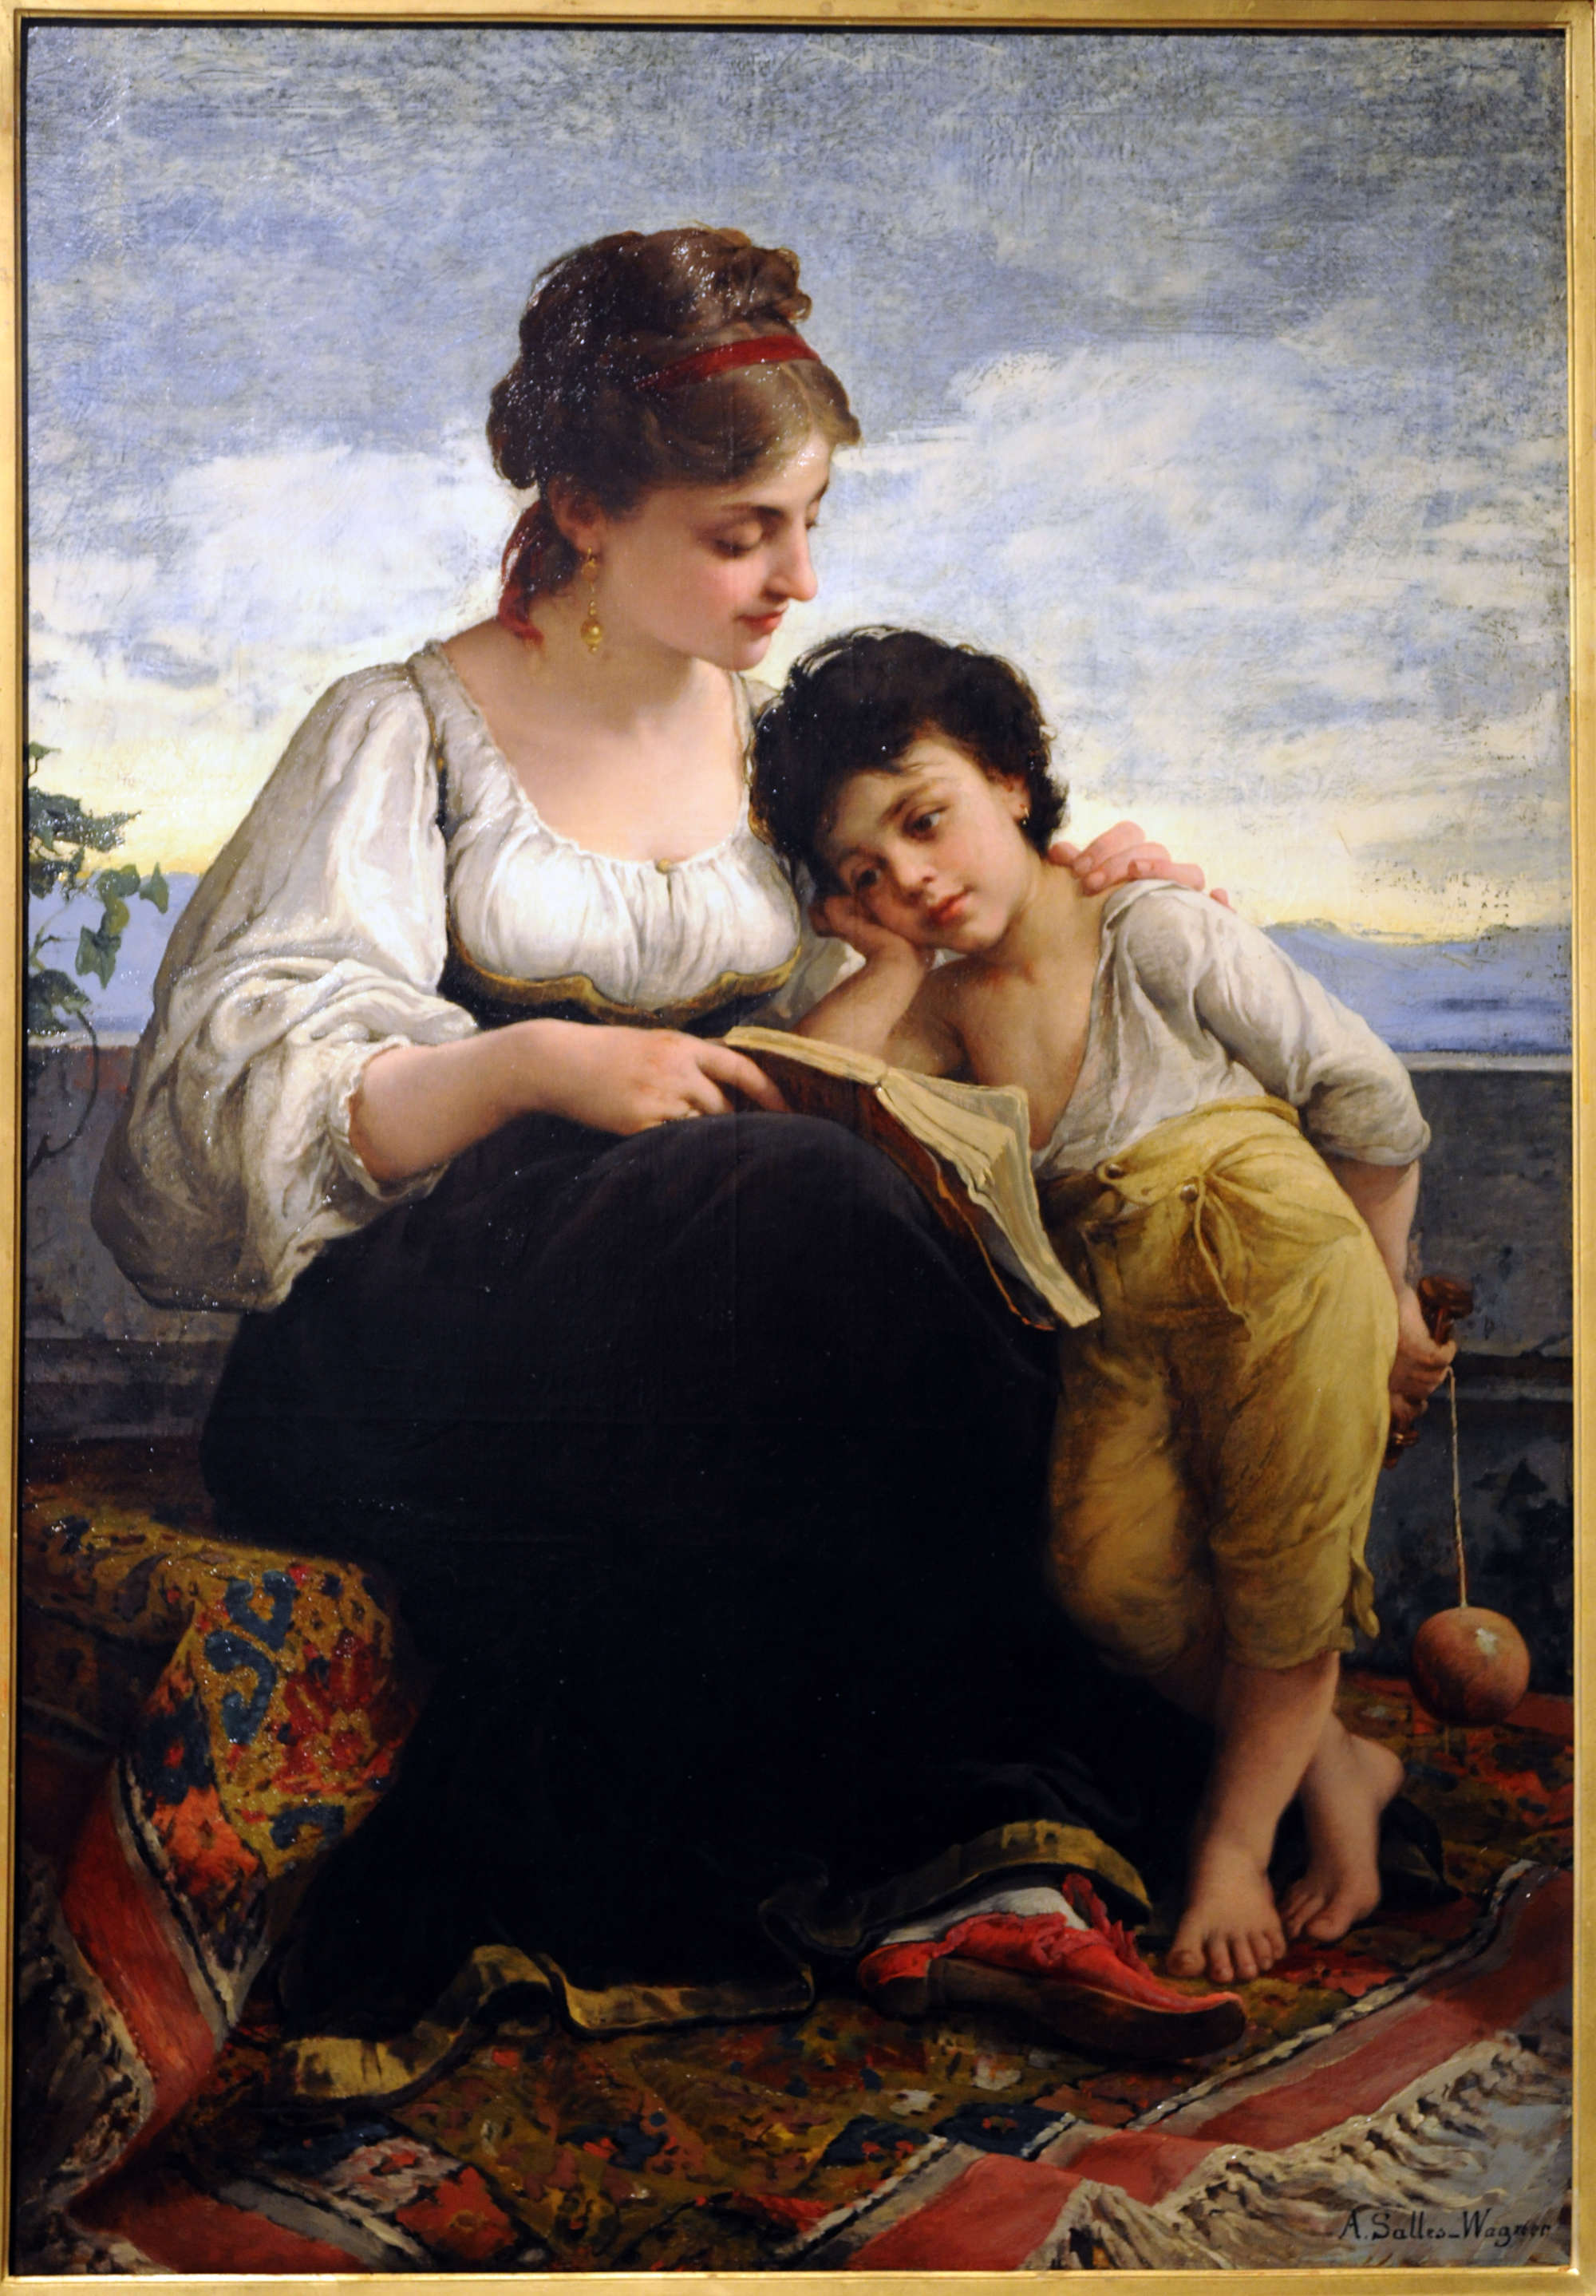 Adelaïde Salles-Wagner, The Reading Lesson (before 1874; oil on canvas, 140.6 x 97.5 cm; Reims, Musée des Beaux-Arts)